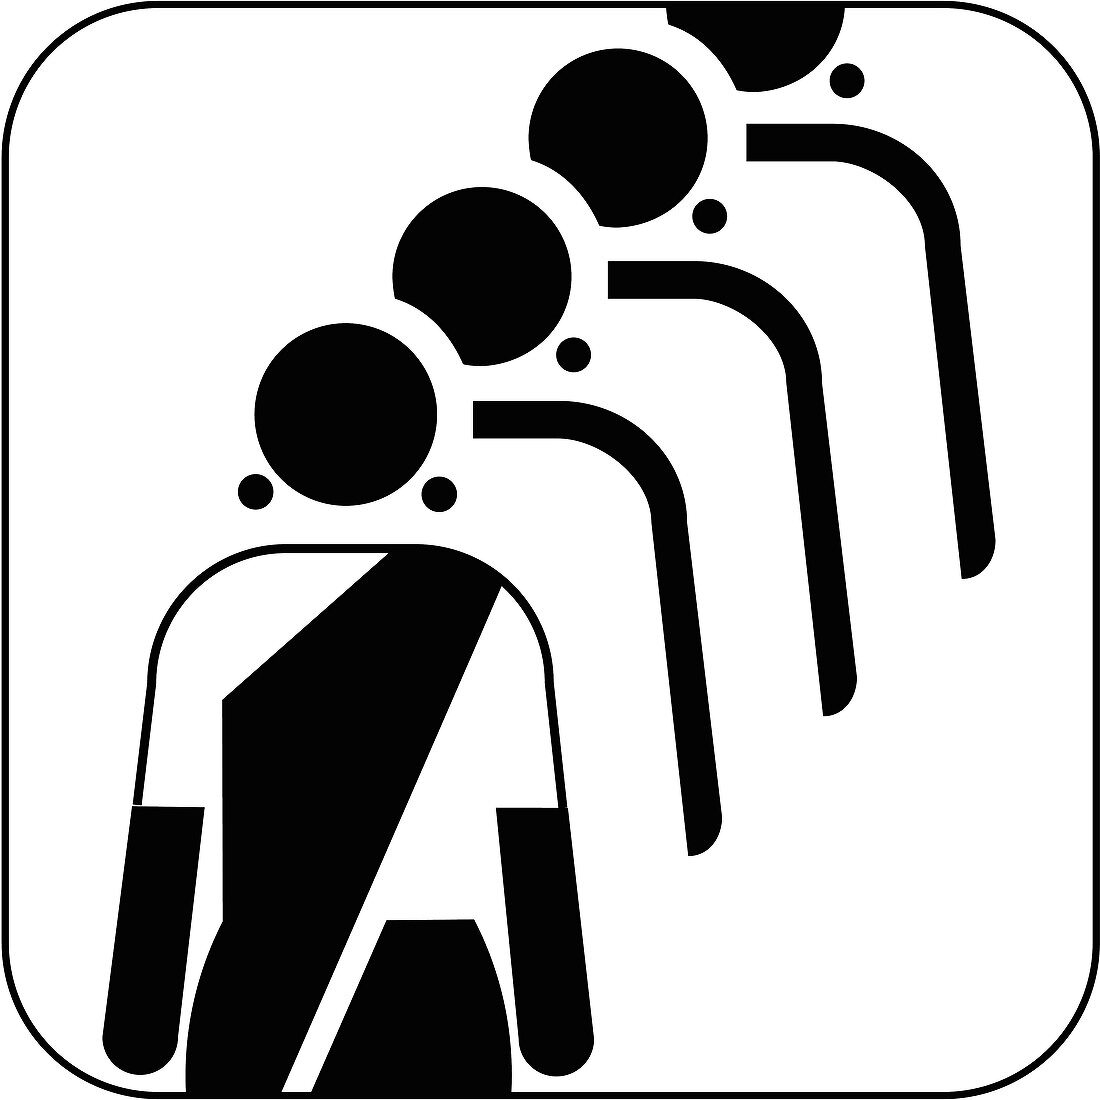 Female queue symbol,artwork